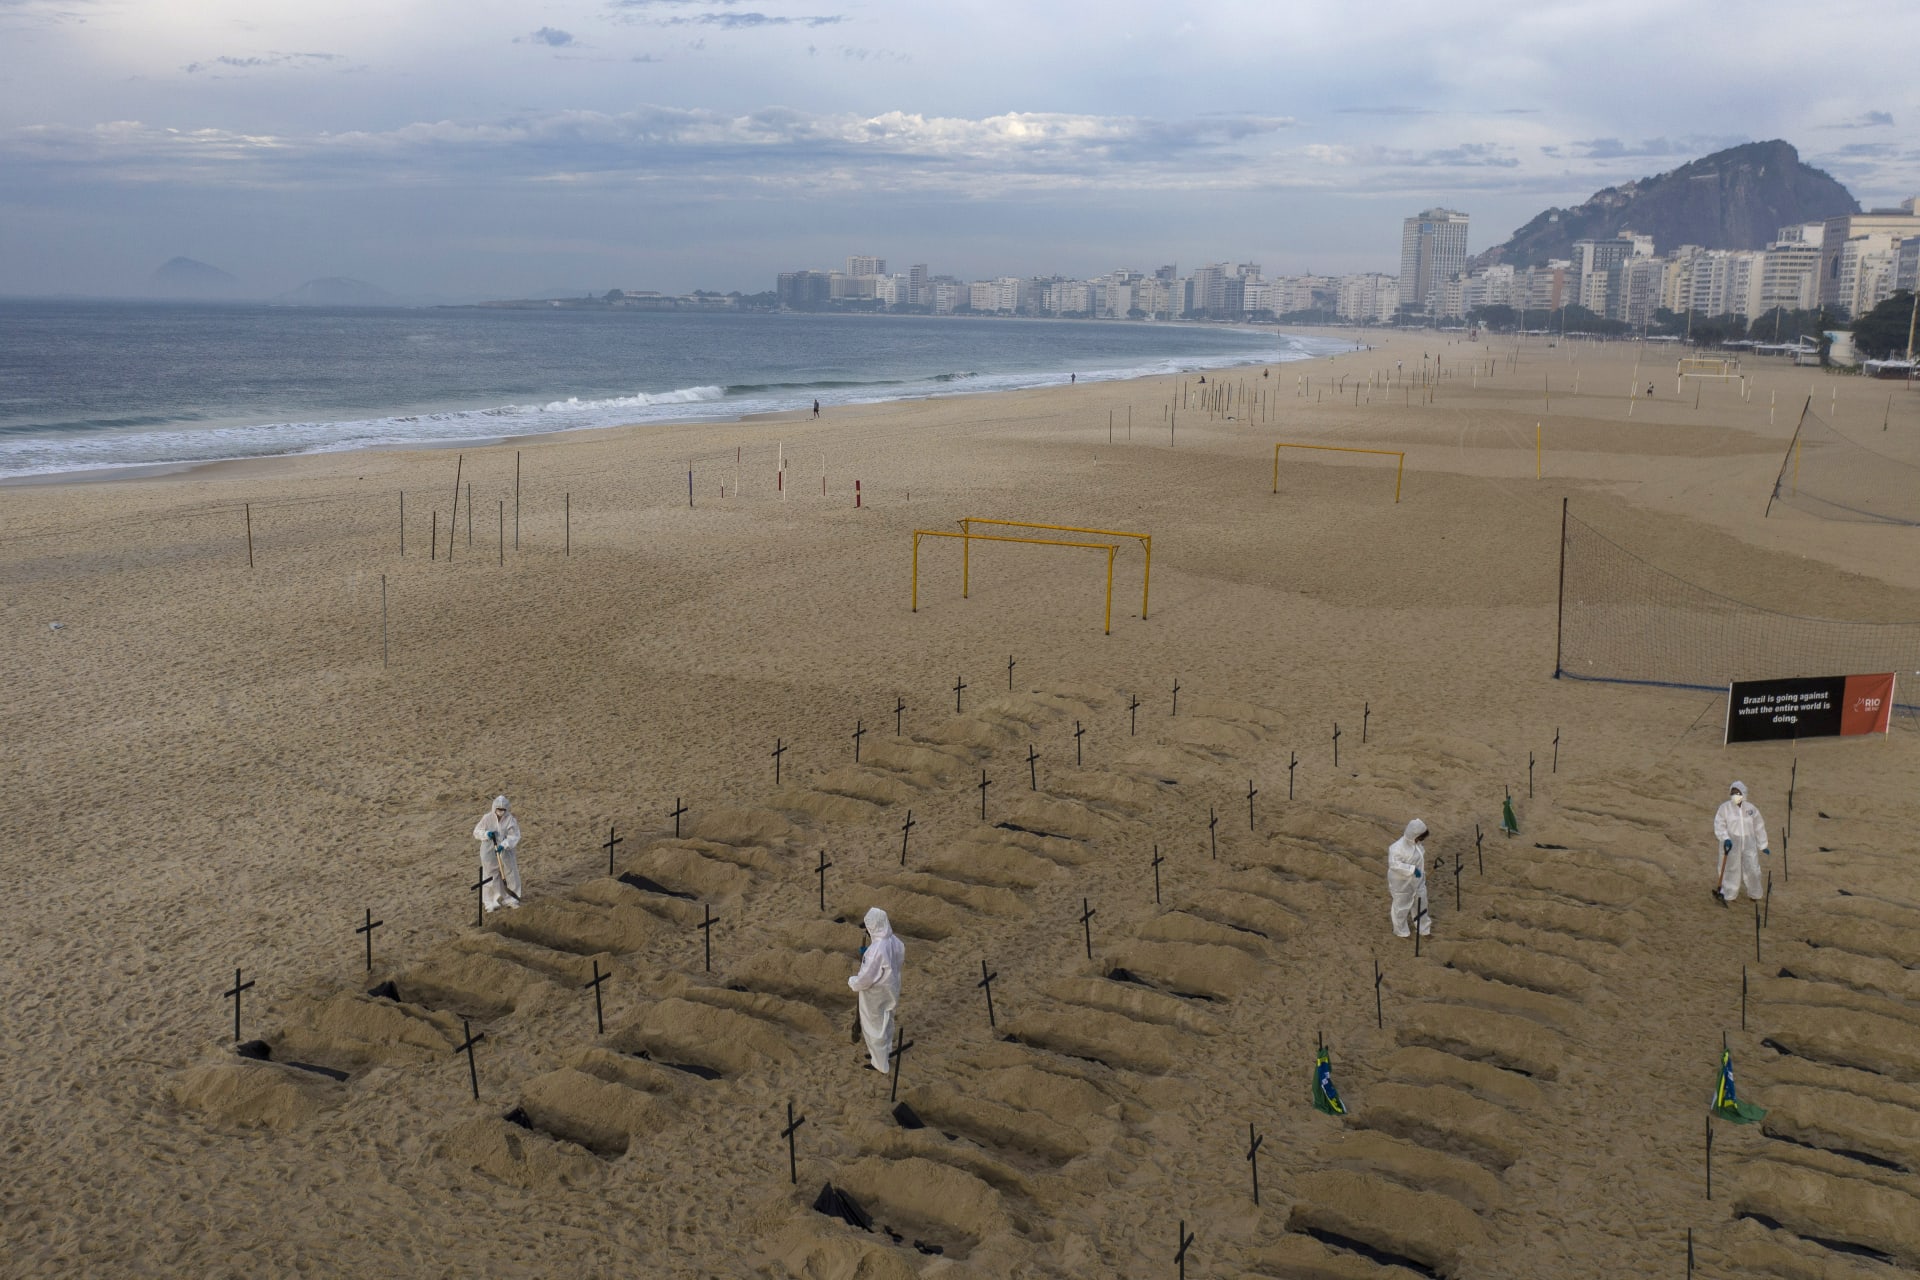 Aktivisté protestující proti postupu vlády v souvislosti s koronakrizí demonstrativně vykopali hroby na slavné pláži Copacabana 